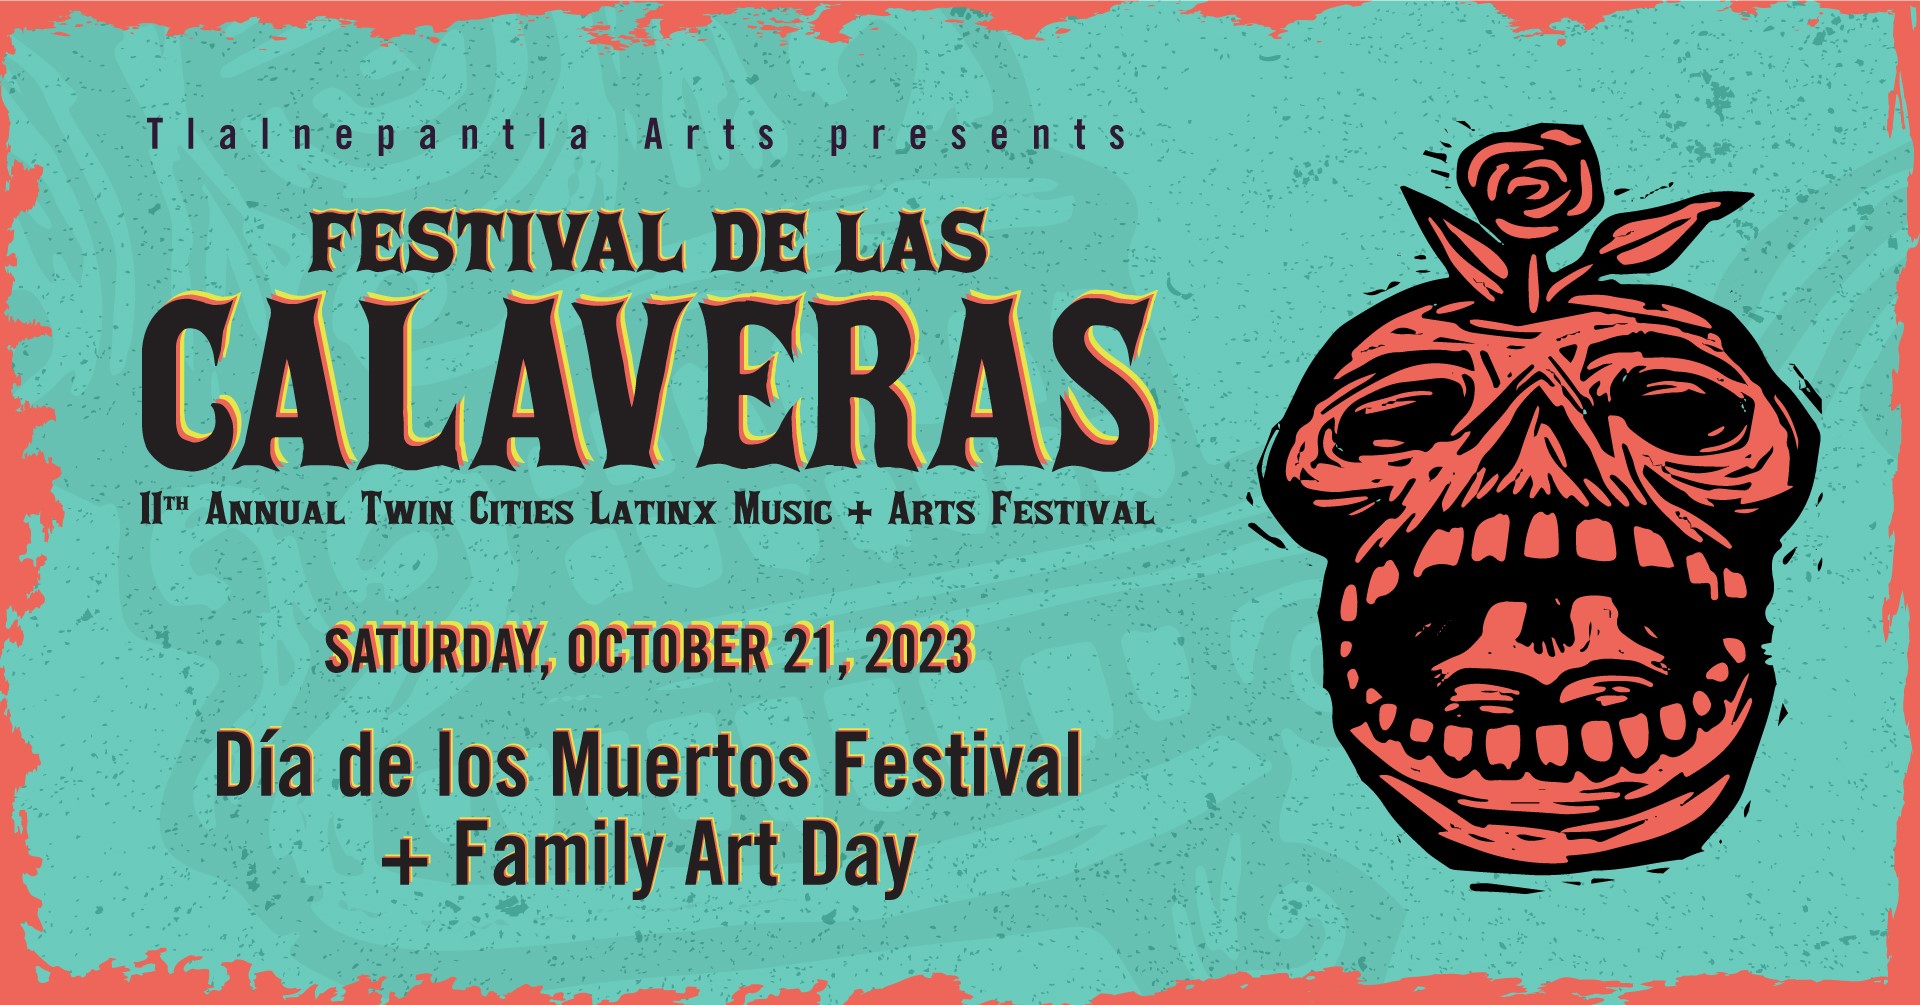 Festival de las Calaveras Dia de los Muertos Festival + Family Art Day ...